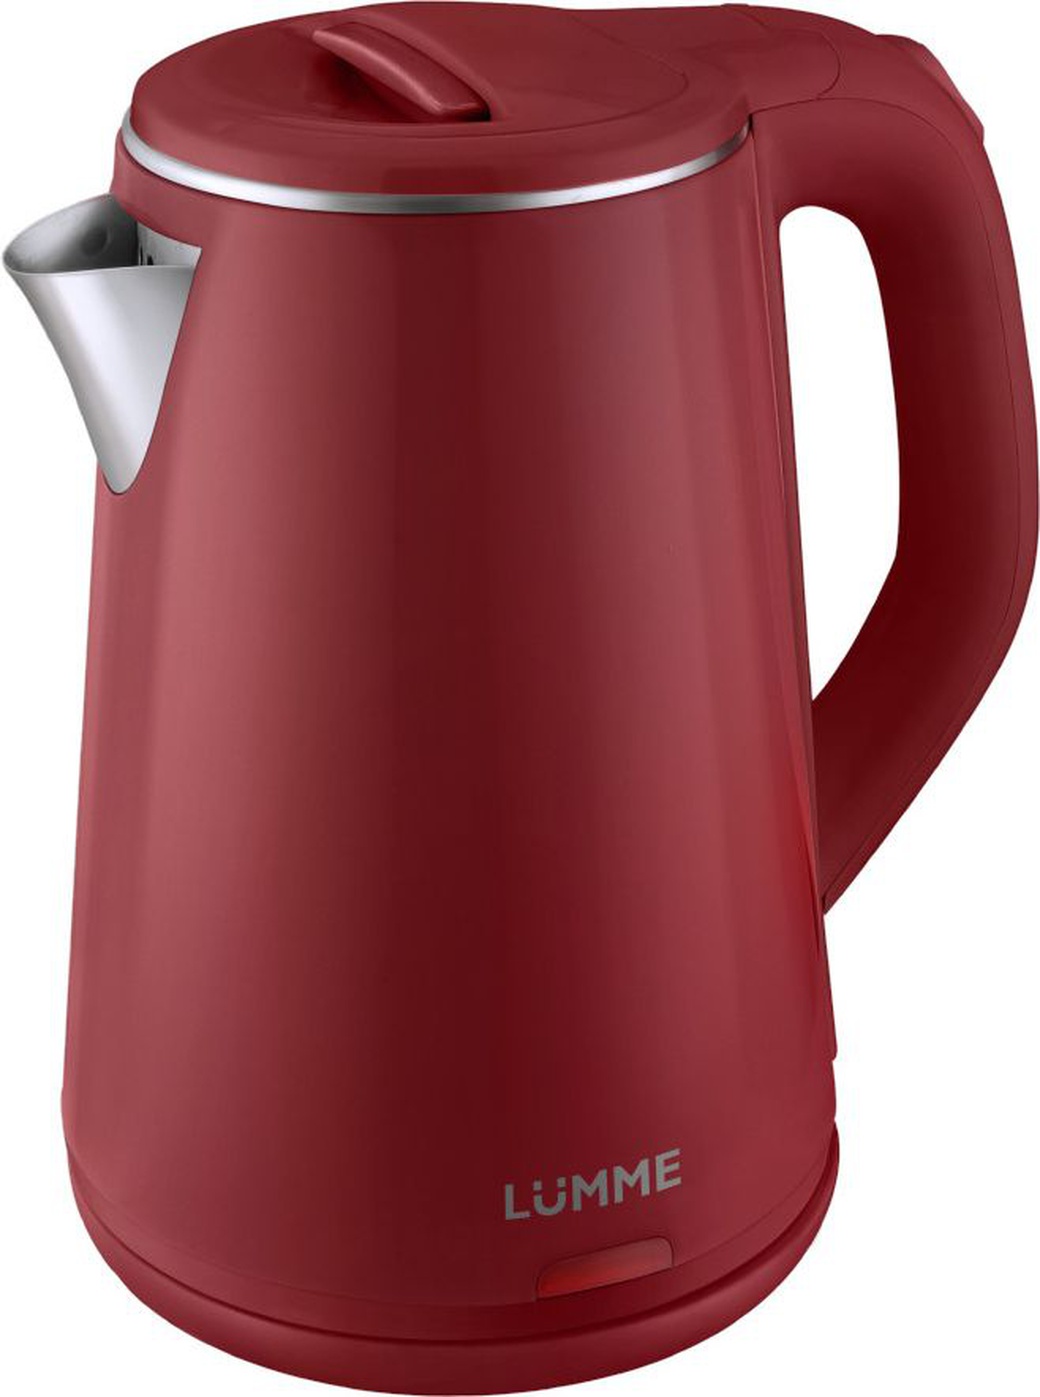 Чайник LUMME LU-156 красный рубин фото